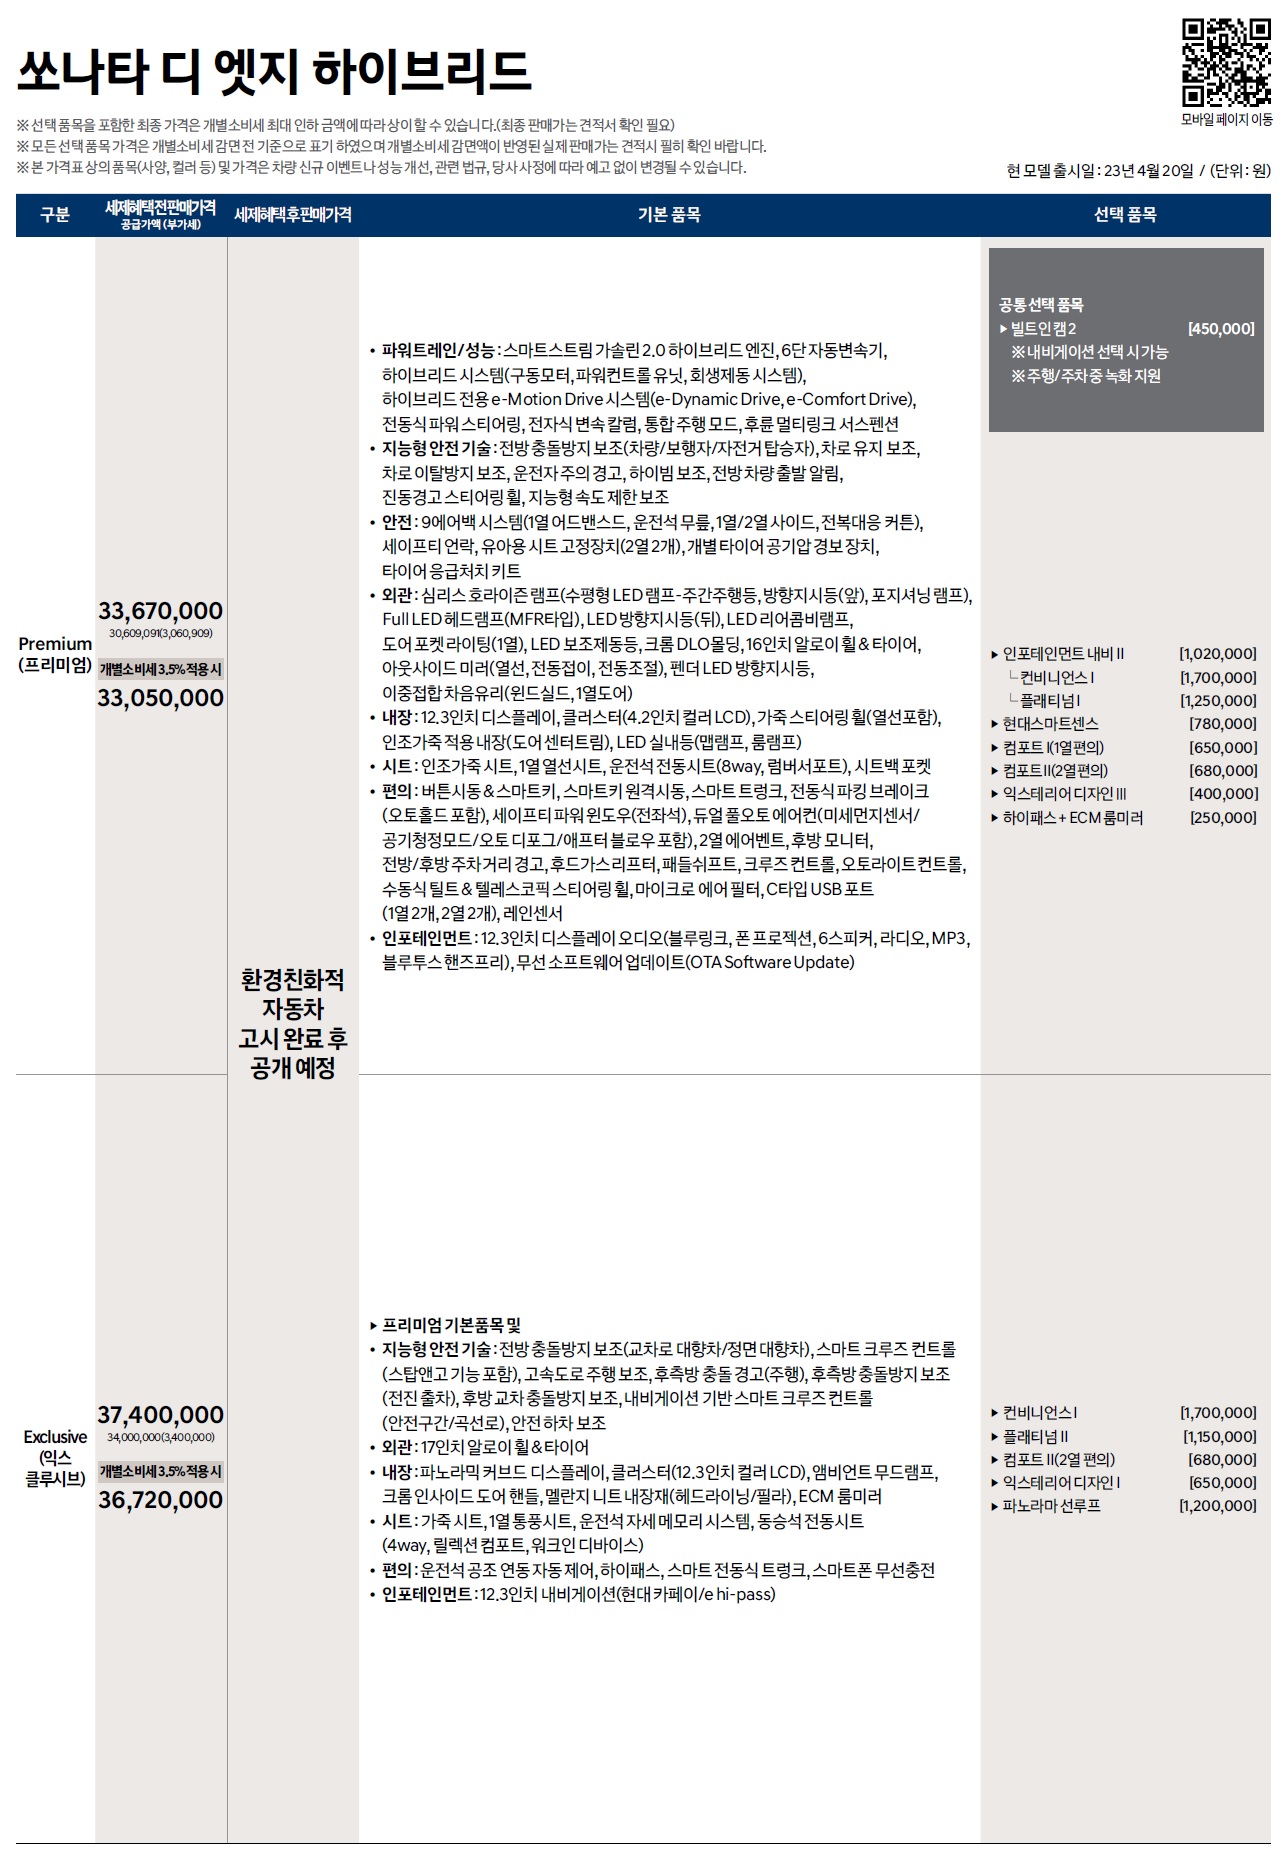 쏘나타 하이브리드 가격표 - 2023년 04월 (디엣지 하이브리드) -1.jpg